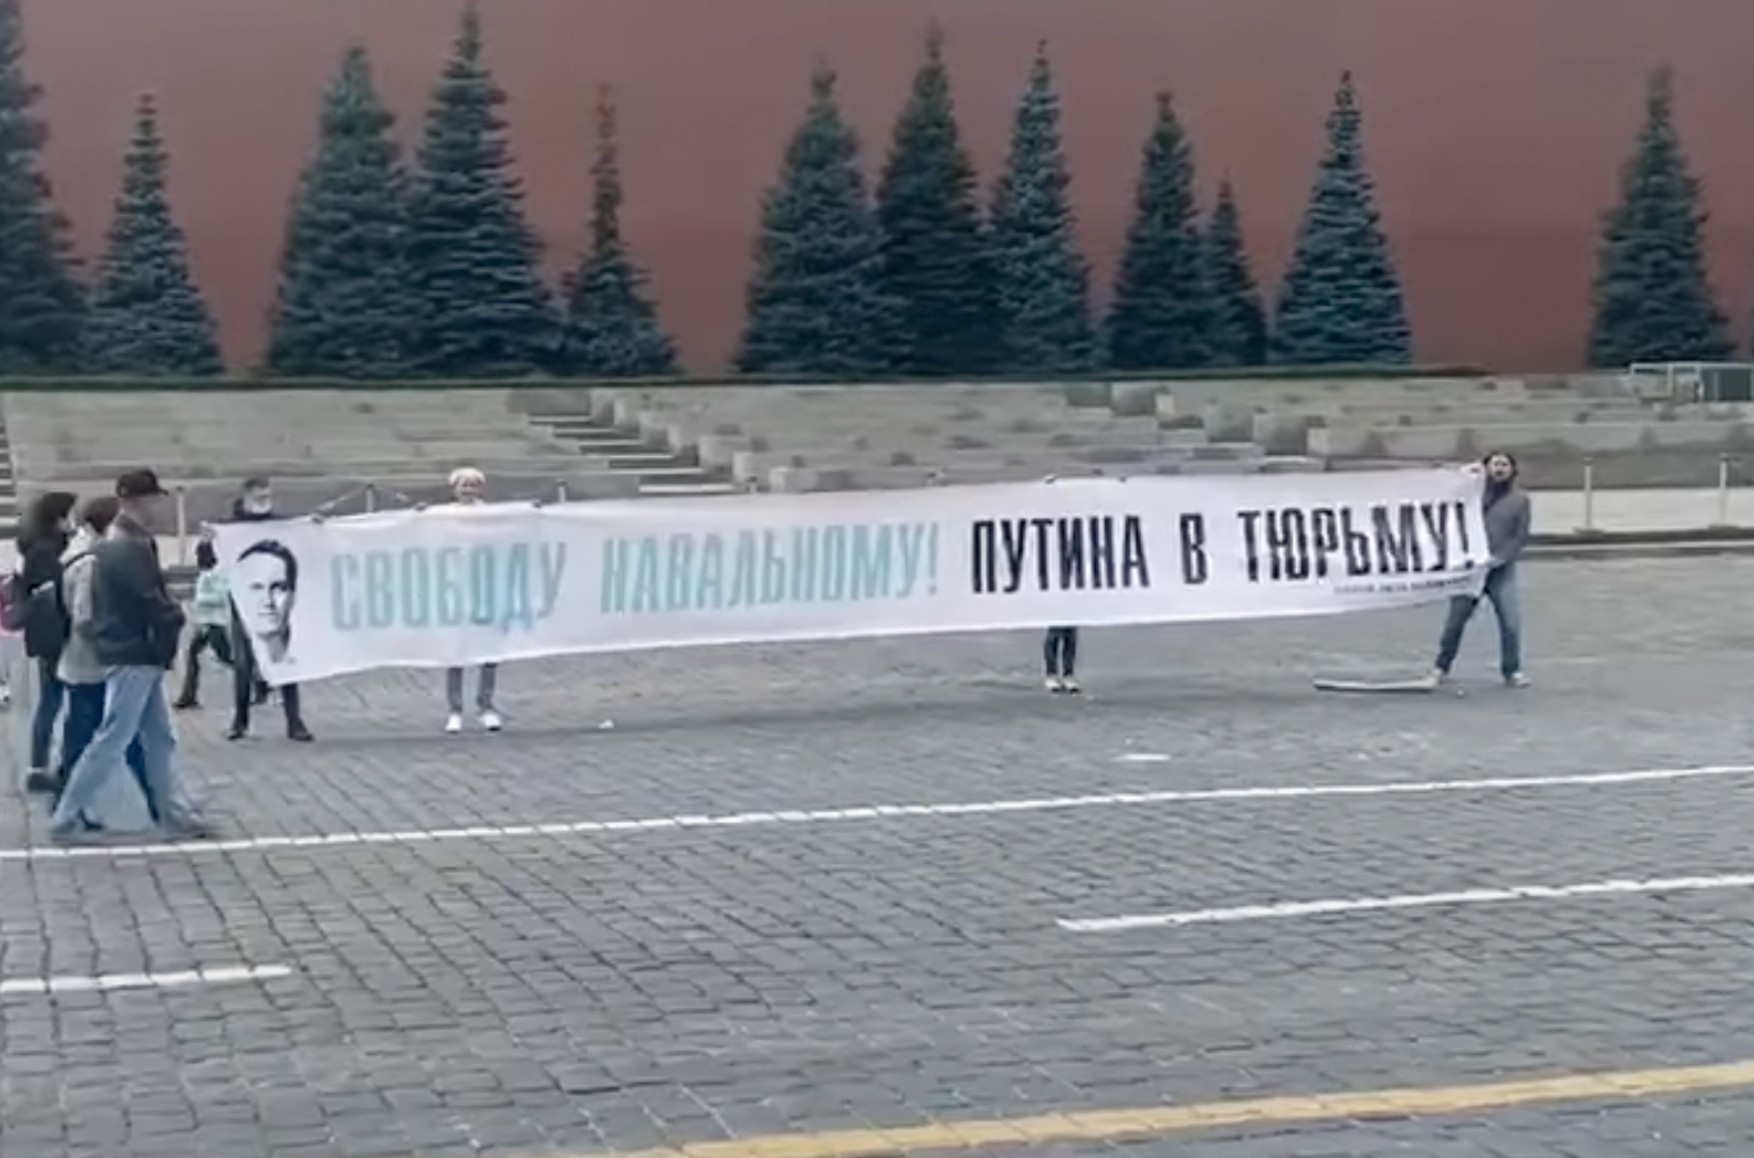 Суд заарештував на 10 діб двох активістів, які розгорнули на Червоній площі банер «Свободу Навальному! Путіна в тюрму! »